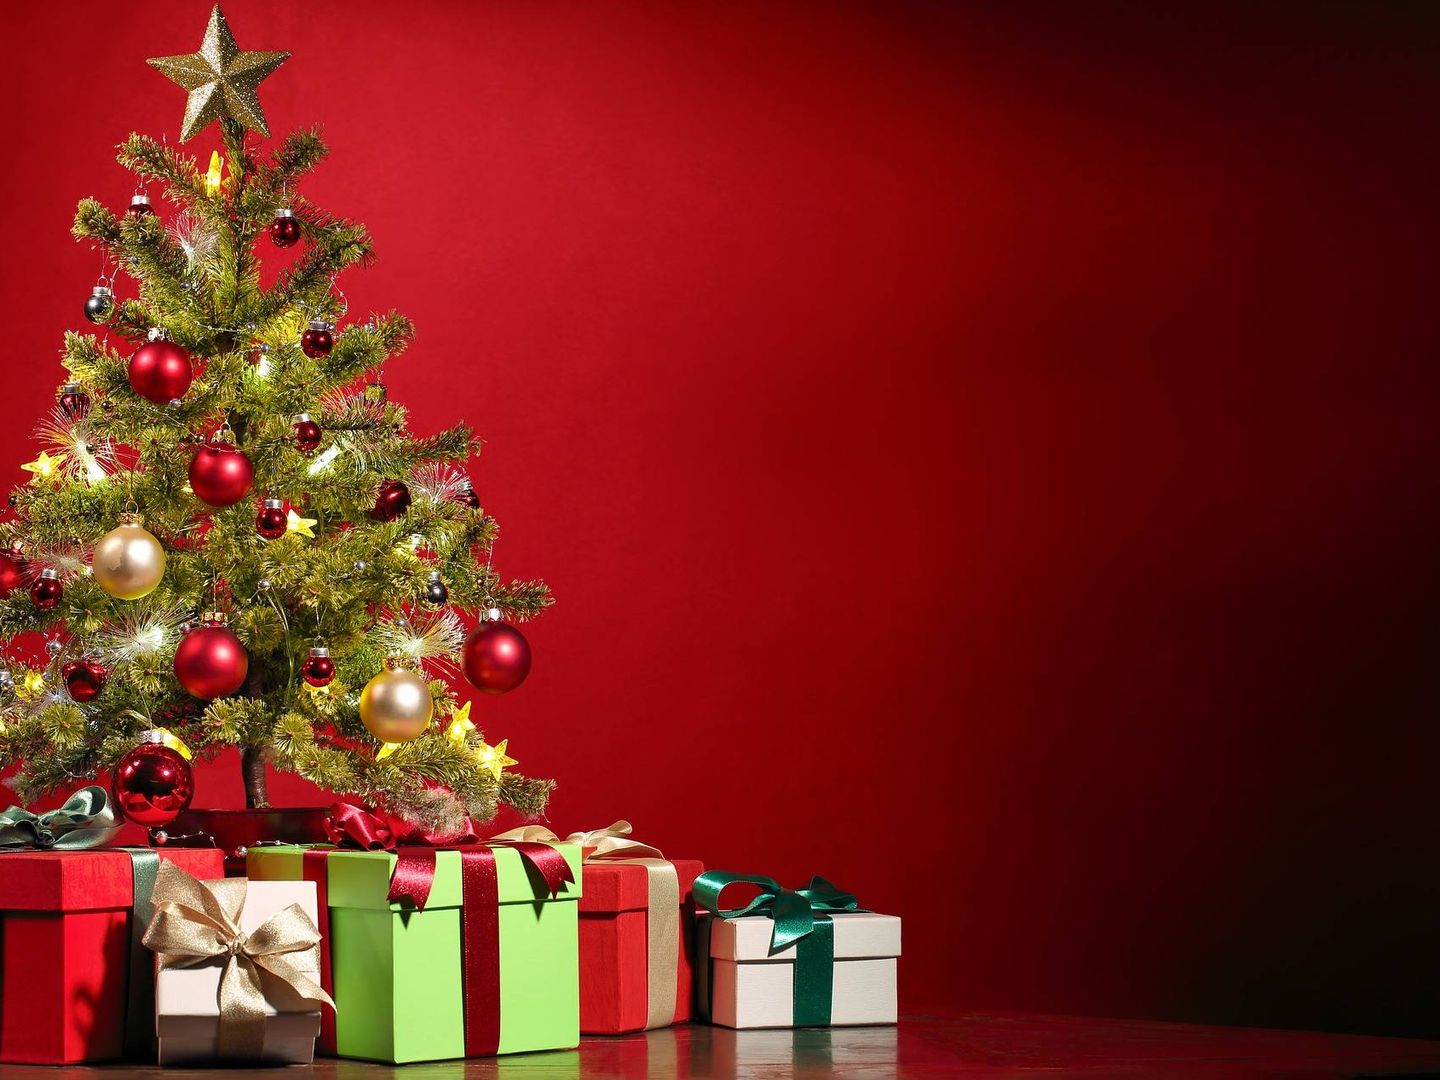 El día 6 de enero es el día de madrugar y ver qué regalos han dejado los Reyes Magos debajo del árbol de Navidad | Foto: PixaBay